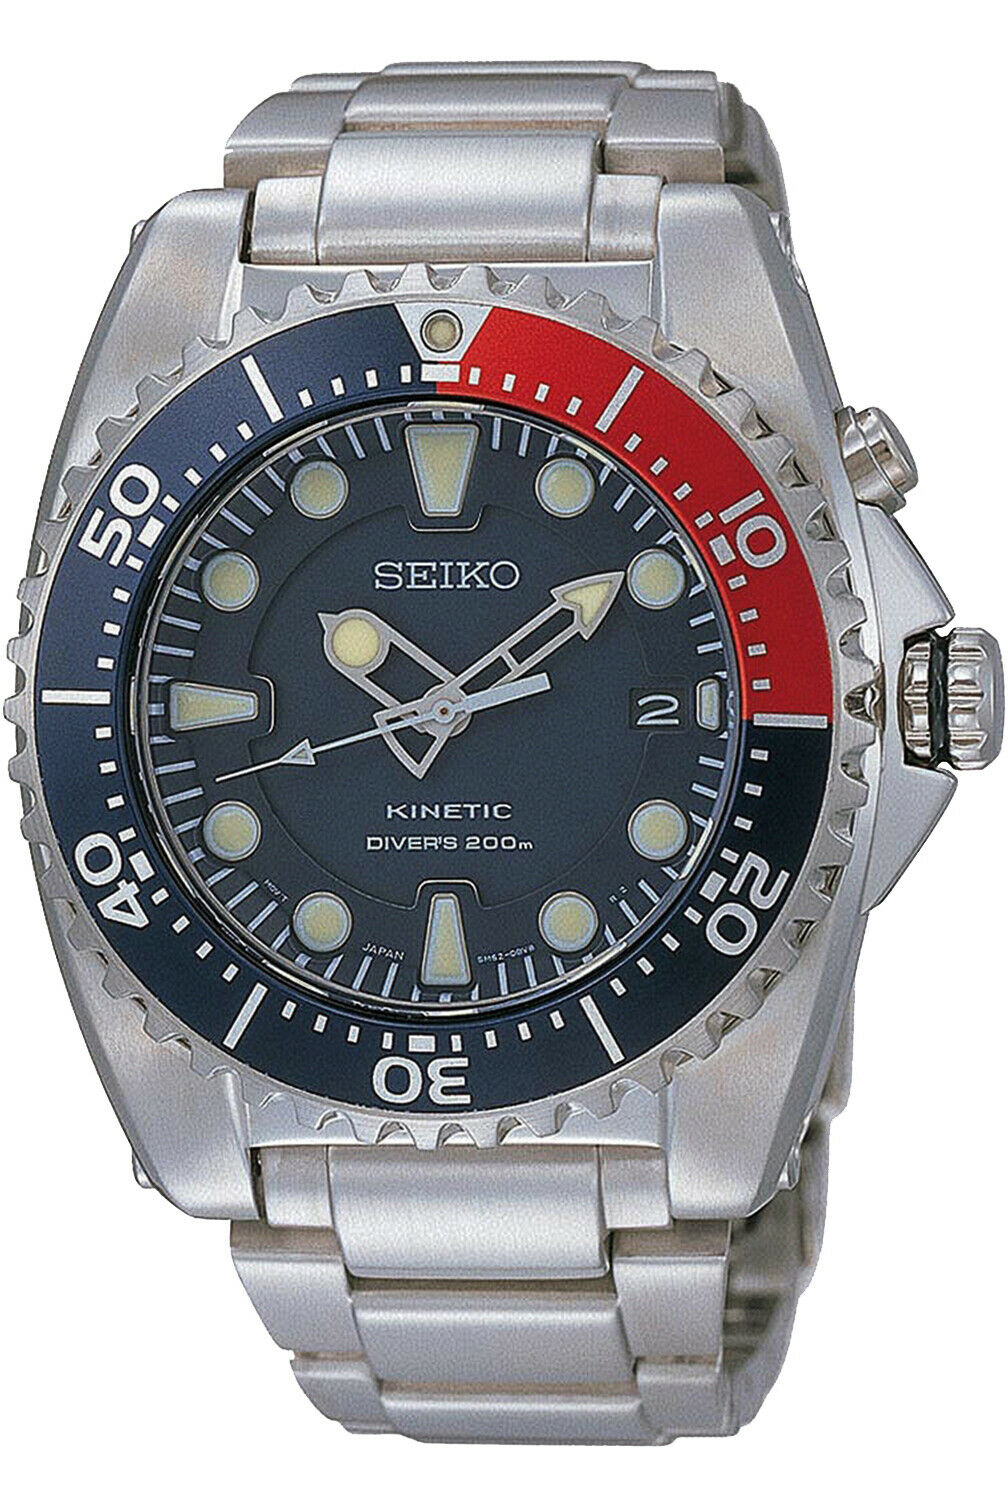 SKA369P1 Kinetic Diver's 200M Men's Watch | WatchCharts